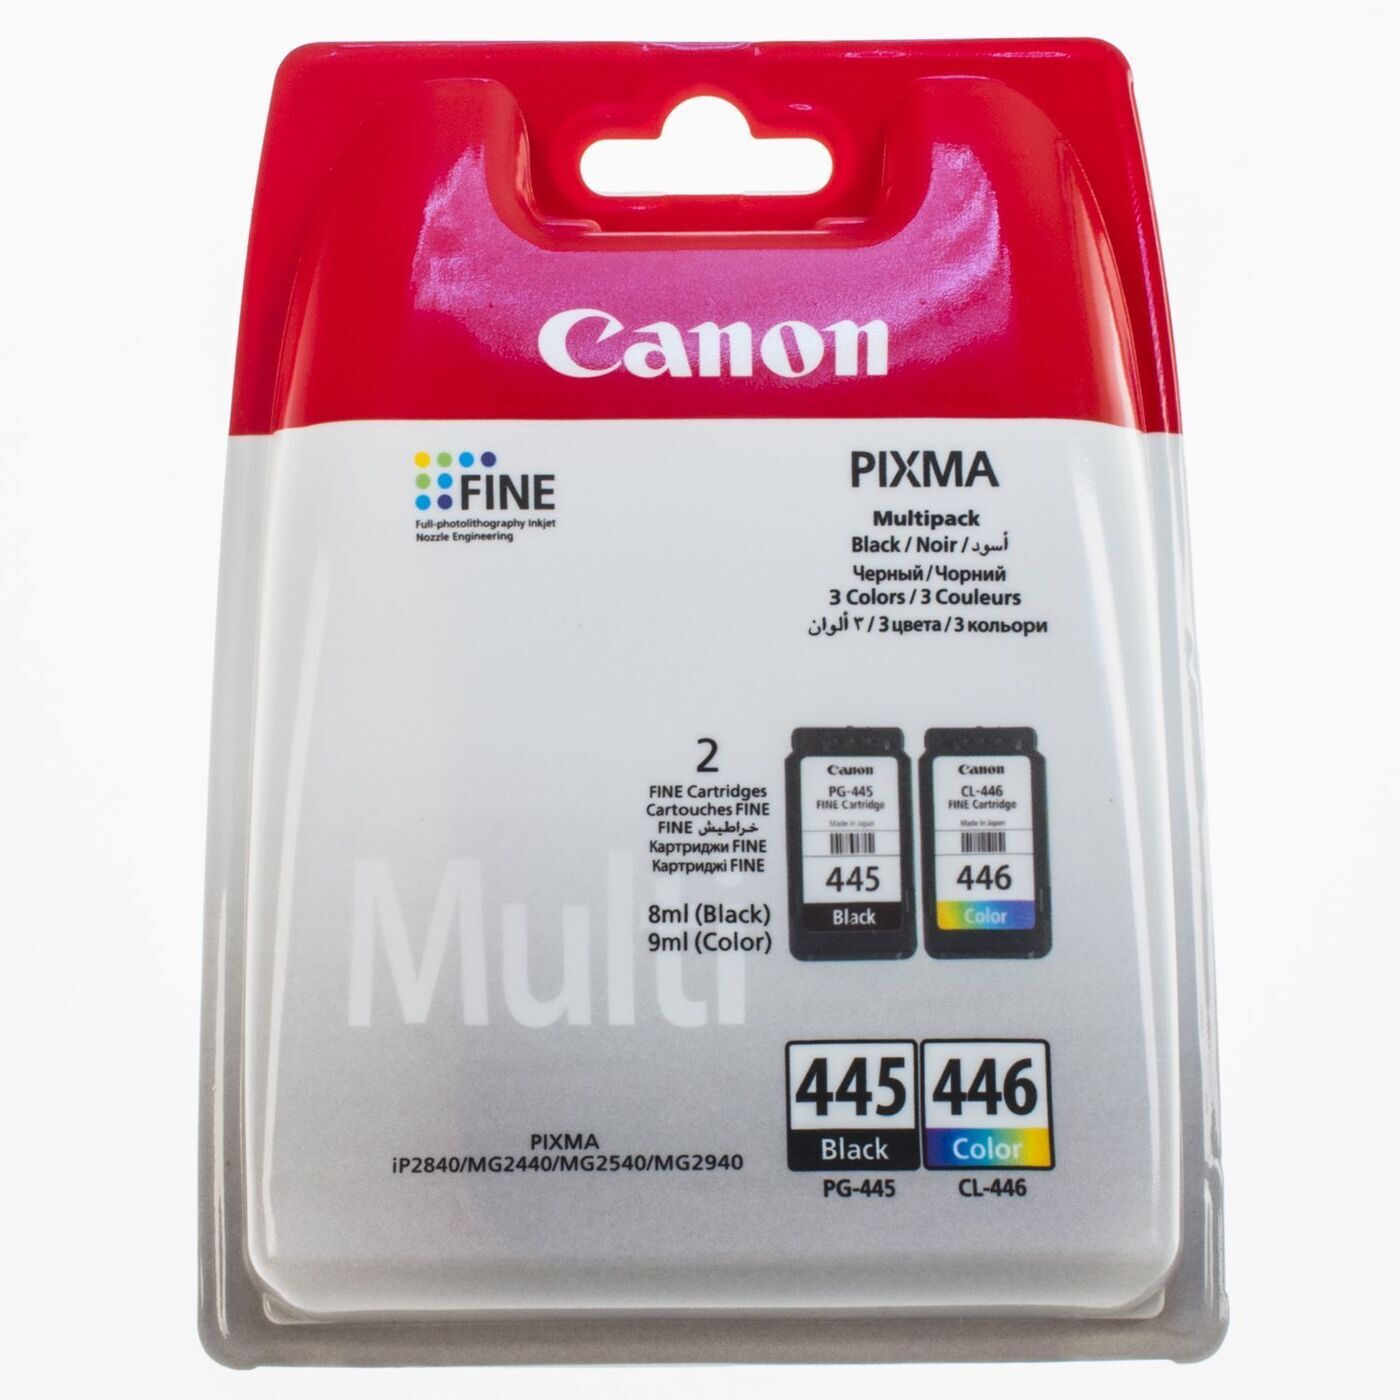 Картридж для принтера Canon PIXMA 446. Картридж Canon PG-445 для mg2540. Принтер Canon PIXMA PG-445. Картридж Canon PG-445/CL-446.